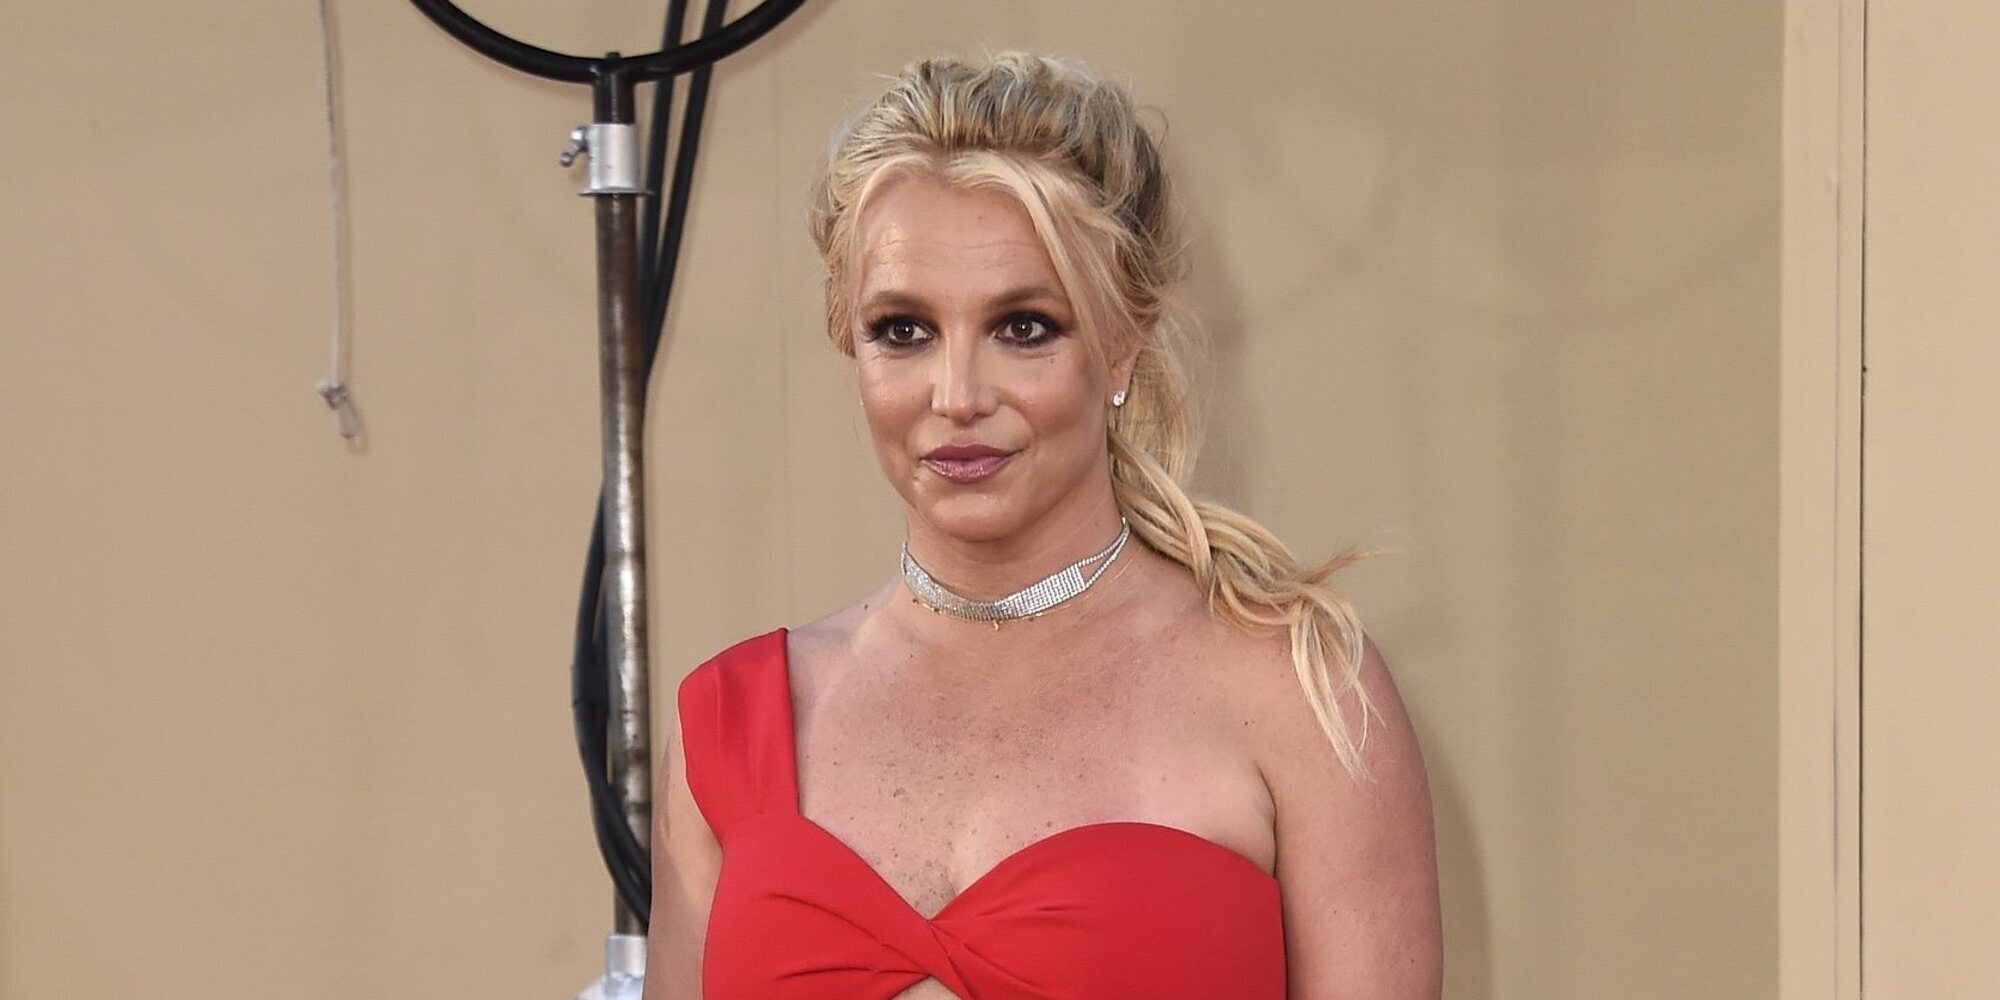 La policía acude a casa de Britney Spears tras recibir la llamada de varios fans preocupados por su bienestar